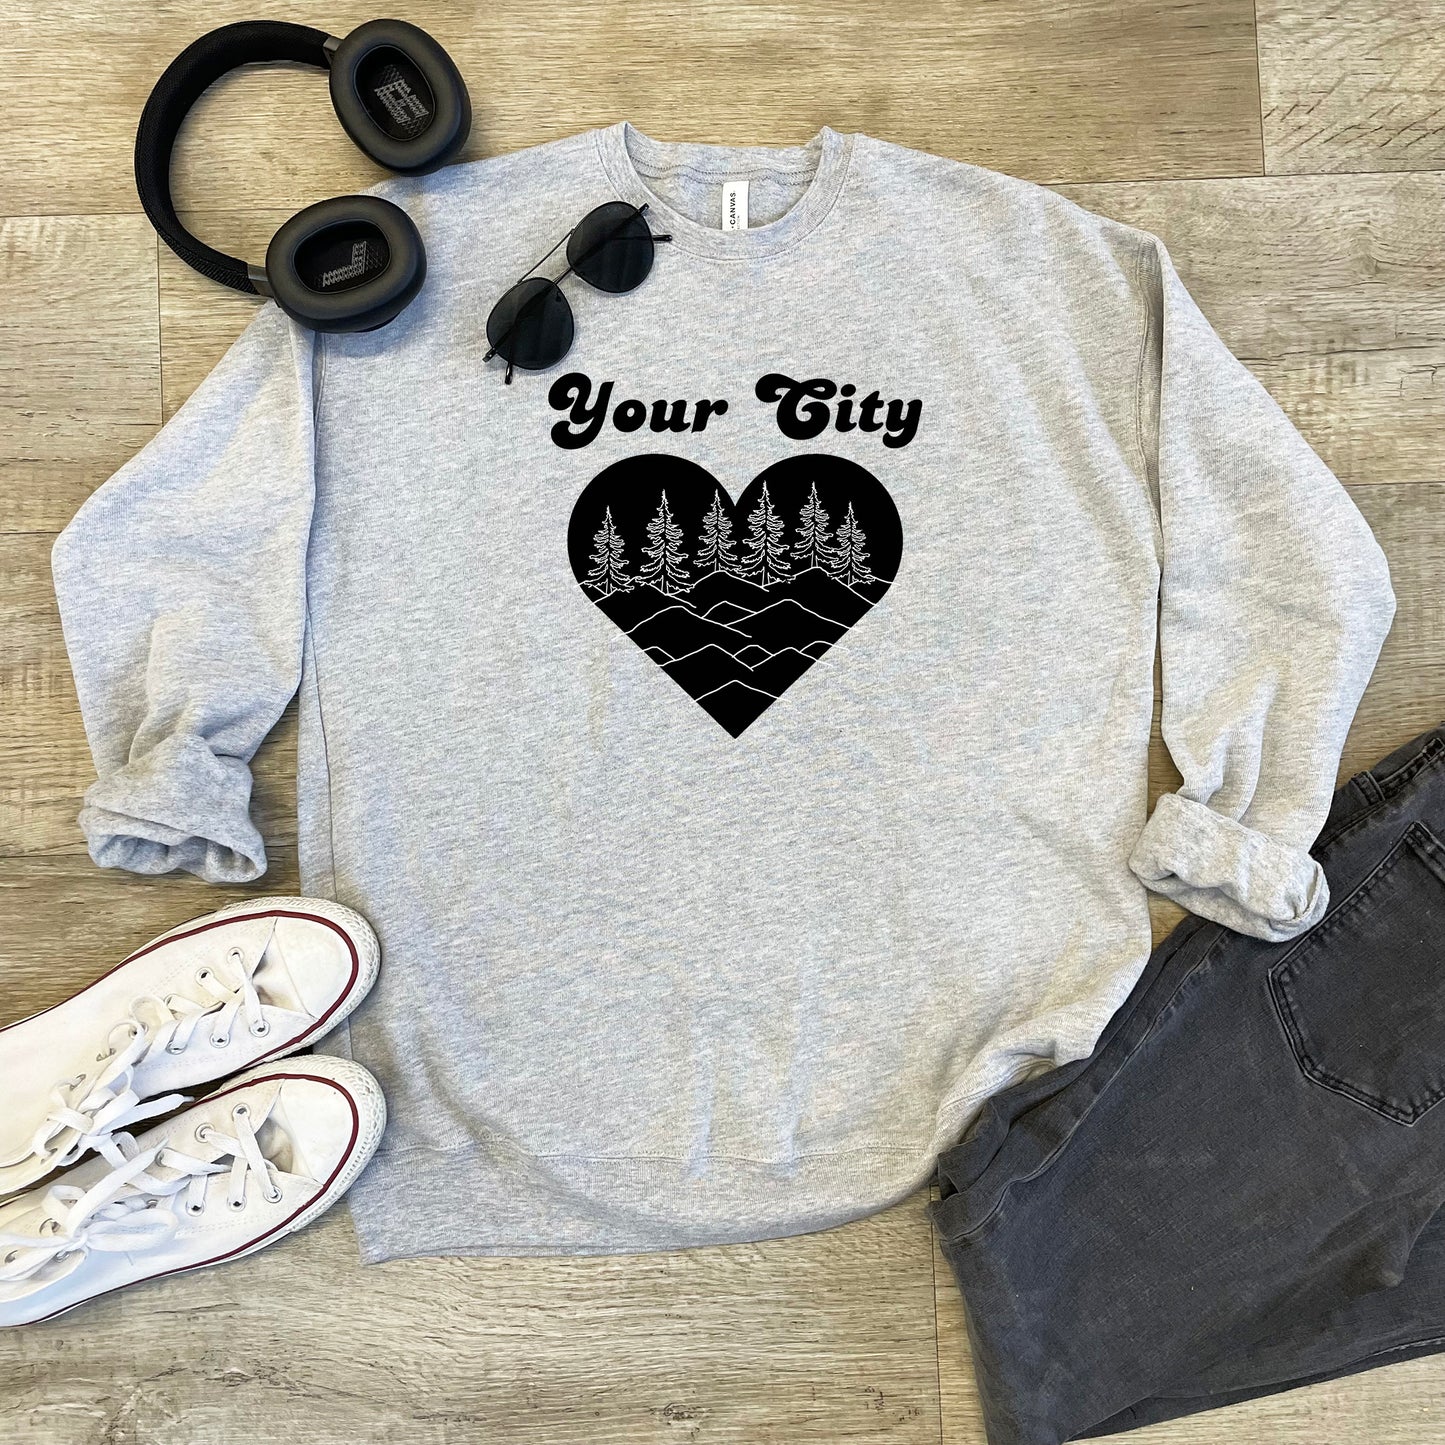 a pair of headphones, a pair of headphones, and a sweatshirt with